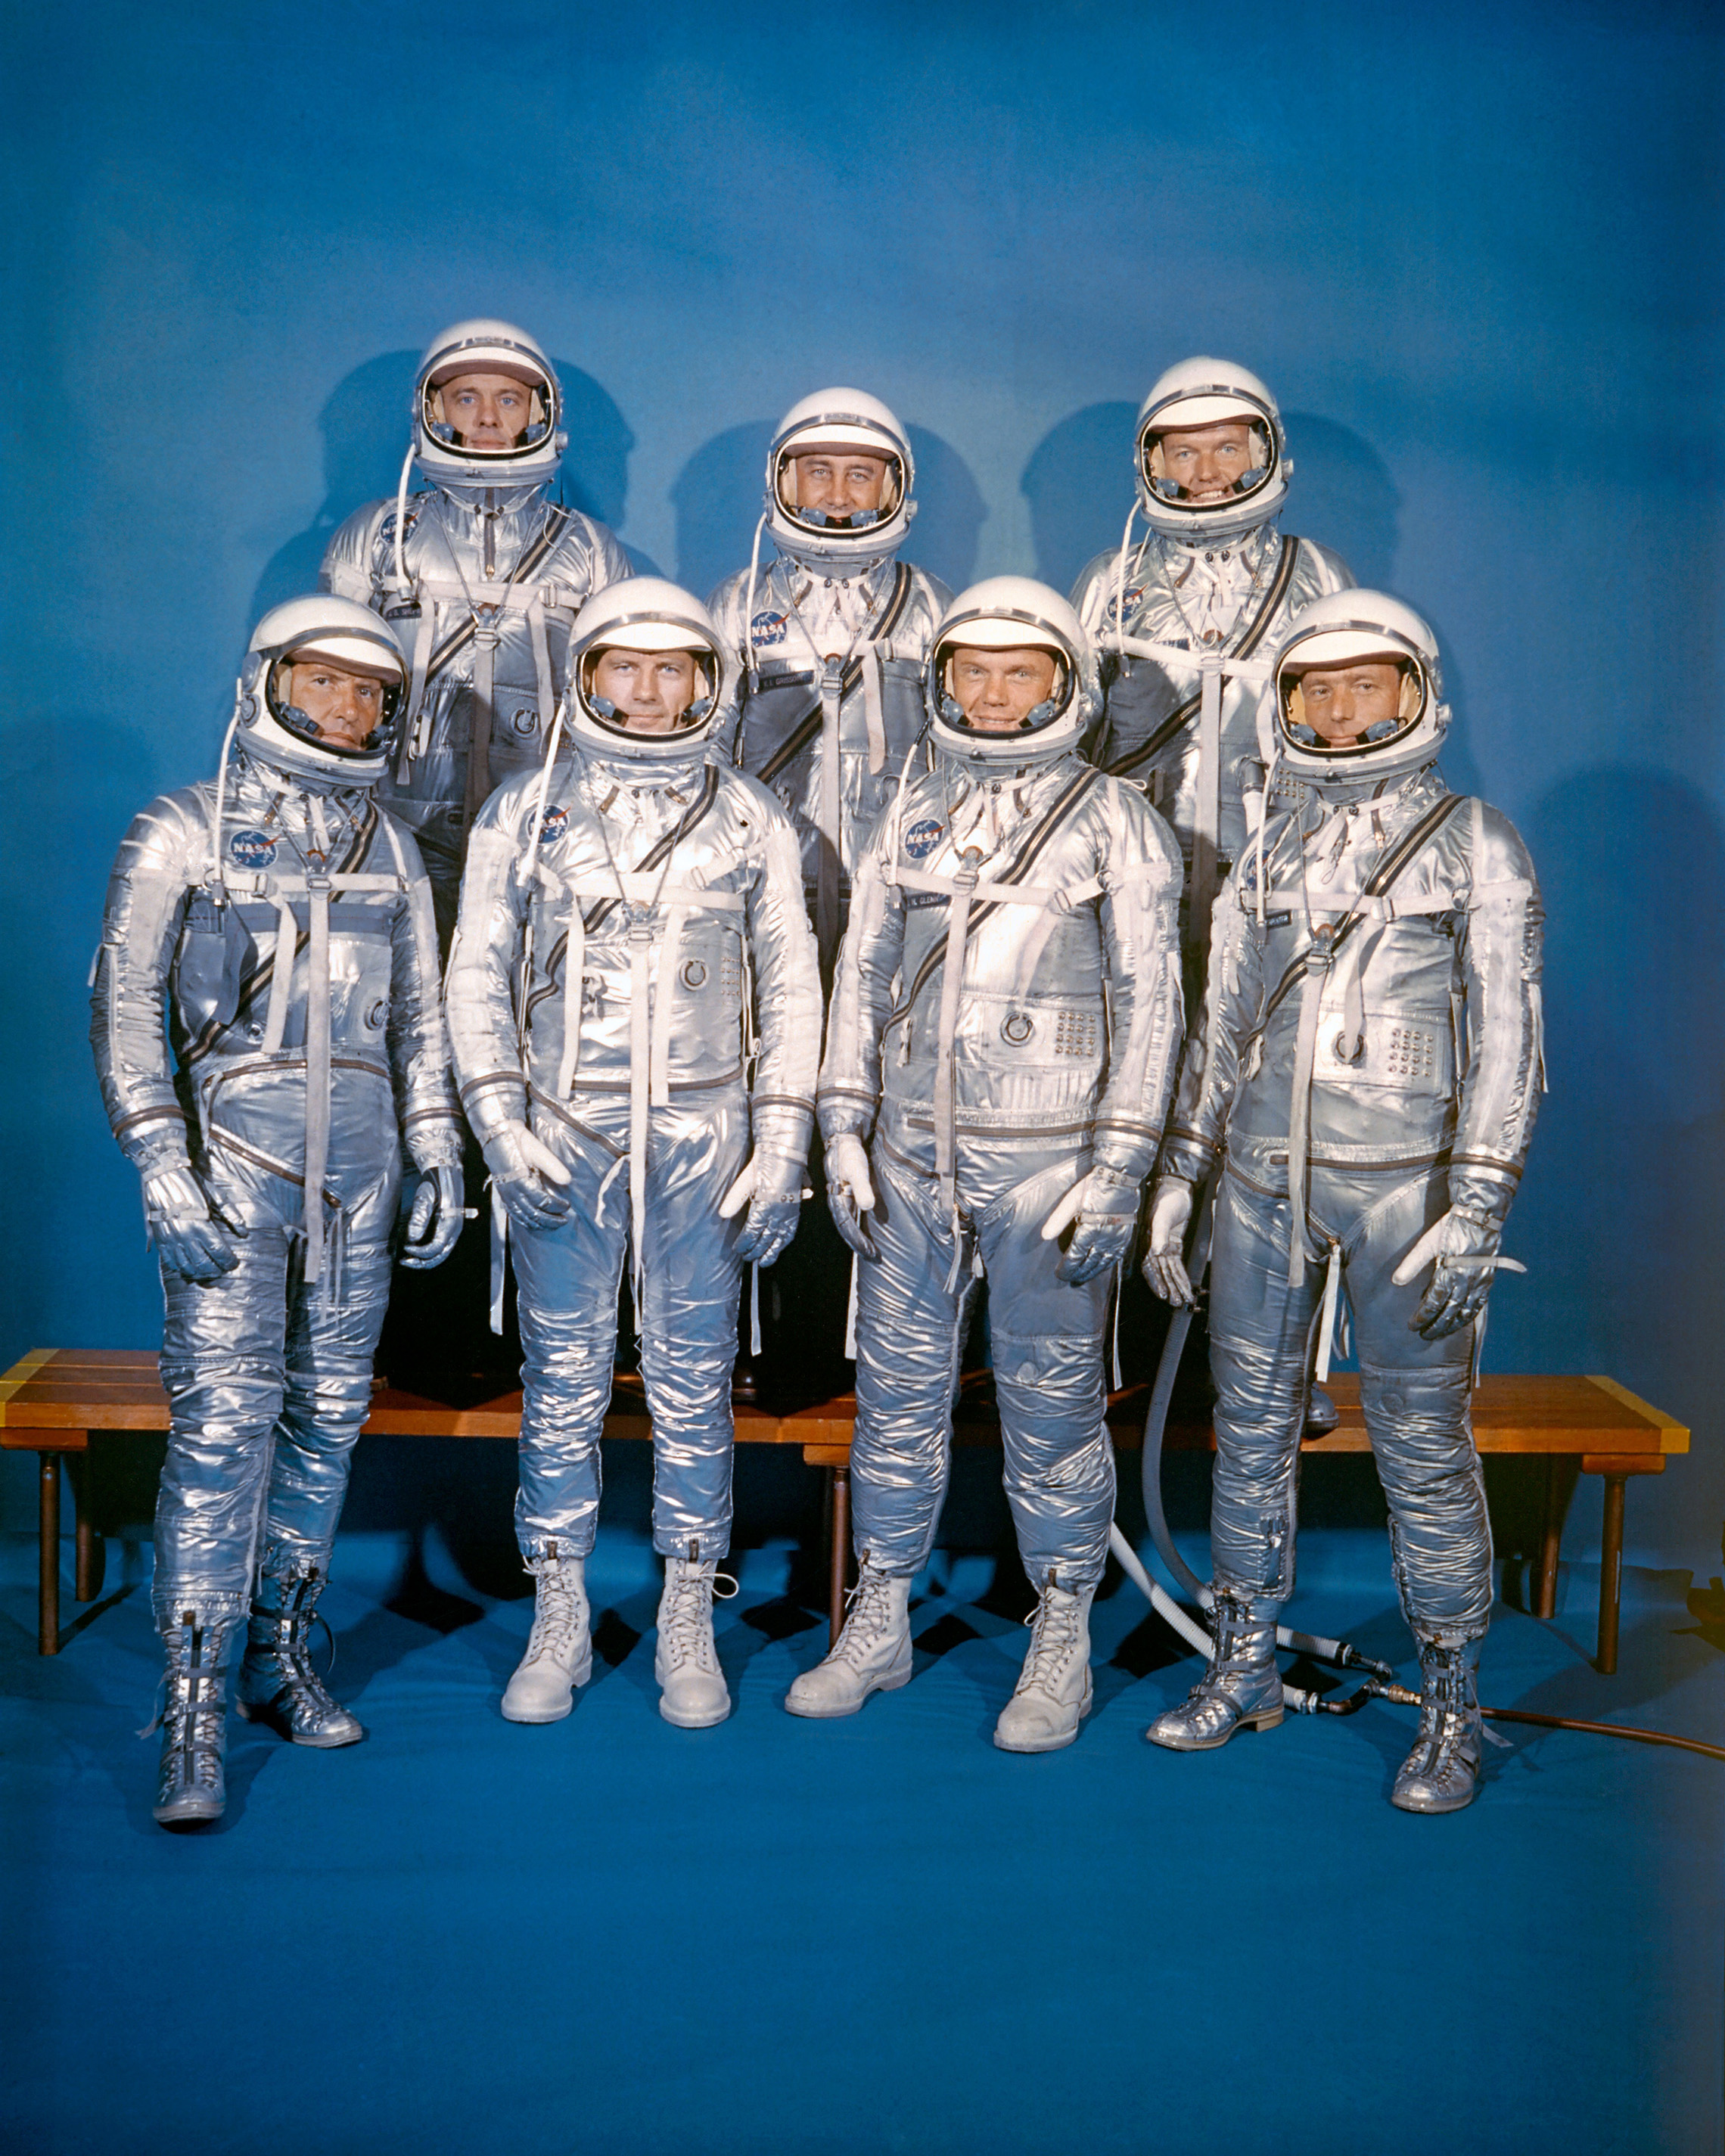 9. April 1959 introduserte NASA Sin første astronautklasse, Merkur 7. Første rad, venstre til høyre: Walter M. Schirra, Jr., Donald K. "Deke" Slayton, John H. Glenn, Jr. og M. Scott Carpenter; bakre rad, Alan B. Shepard, Jr., Virgil I. "Gus" Grissom, Og L. Gordon Cooper, JR. (NASA)"Deke" Slayton, John H. Glenn, Jr., and M. Scott Carpenter; back row, Alan B. Shepard, Jr., Virgil I. "Gus" Grissom, and L. Gordon Cooper, Jr. (NASA)